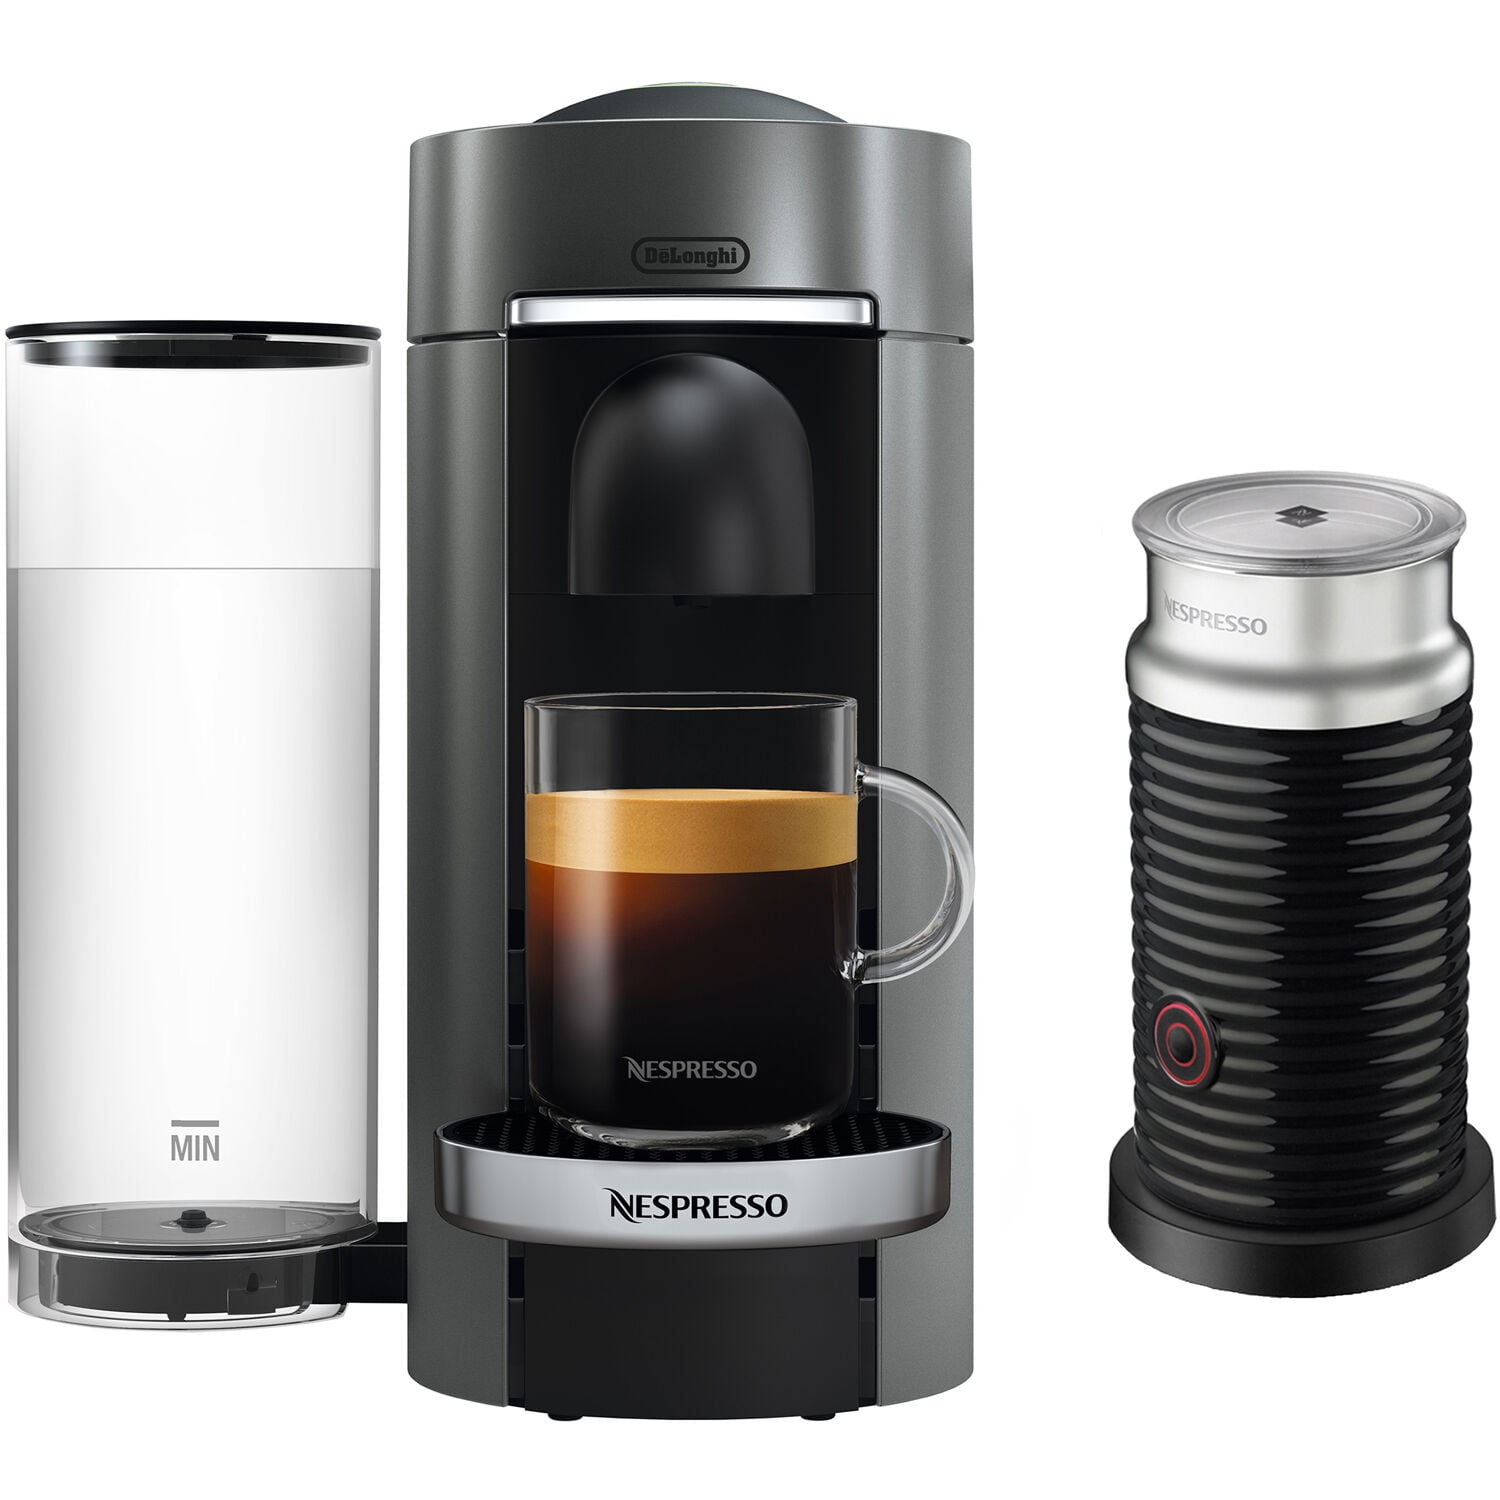 Nespresso VertuoPlus Deluxe Coffee & Espresso Machine with